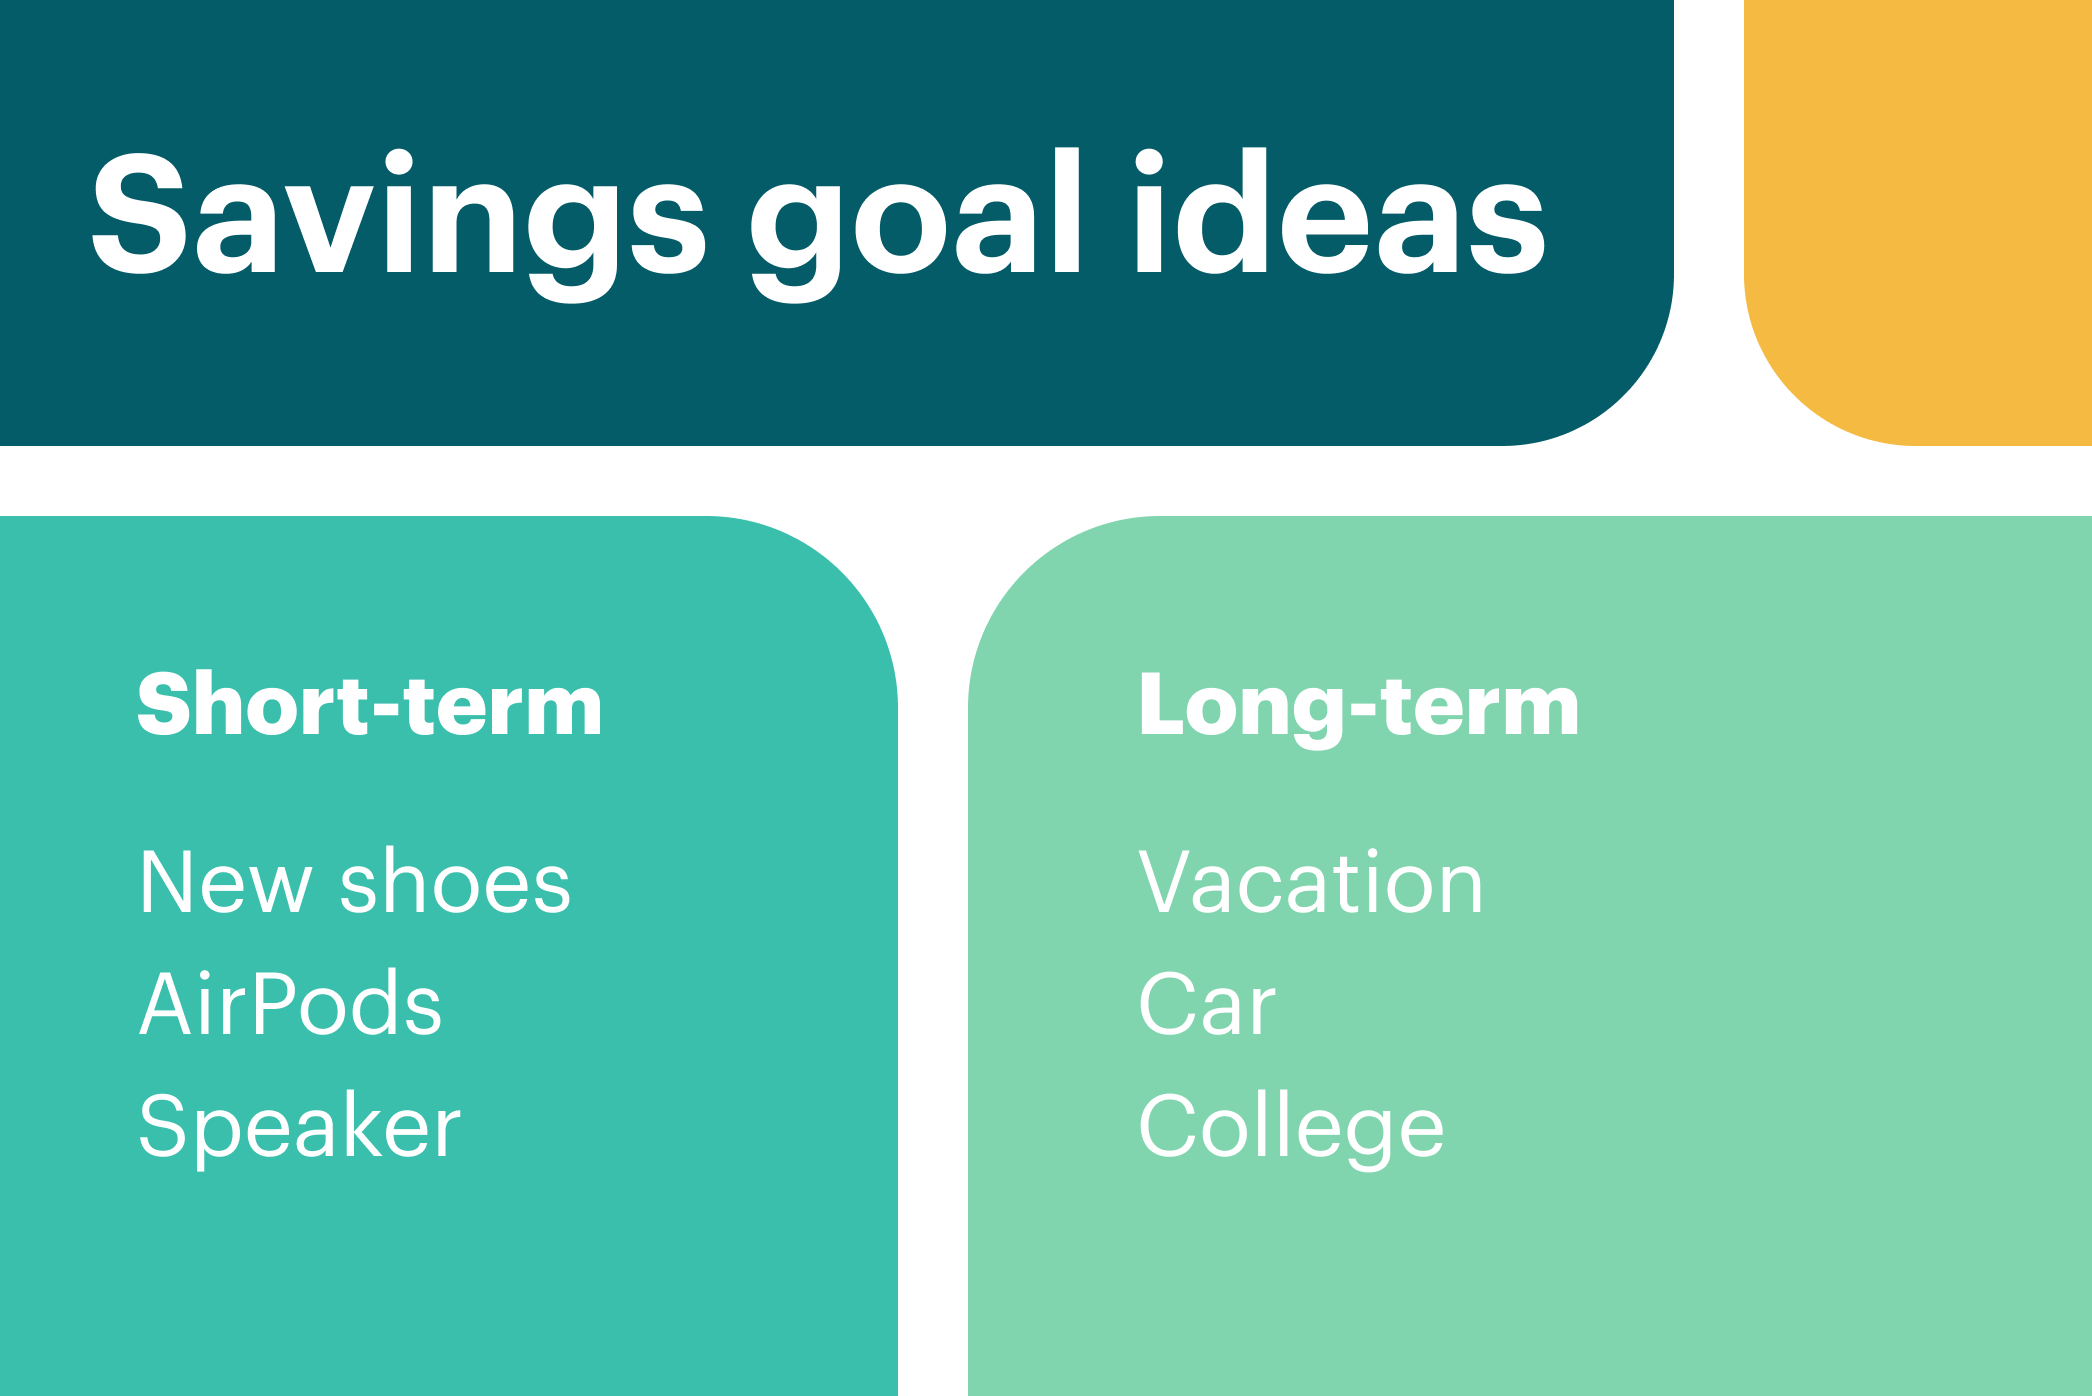 savings goal ideas, for both short-term and long-term